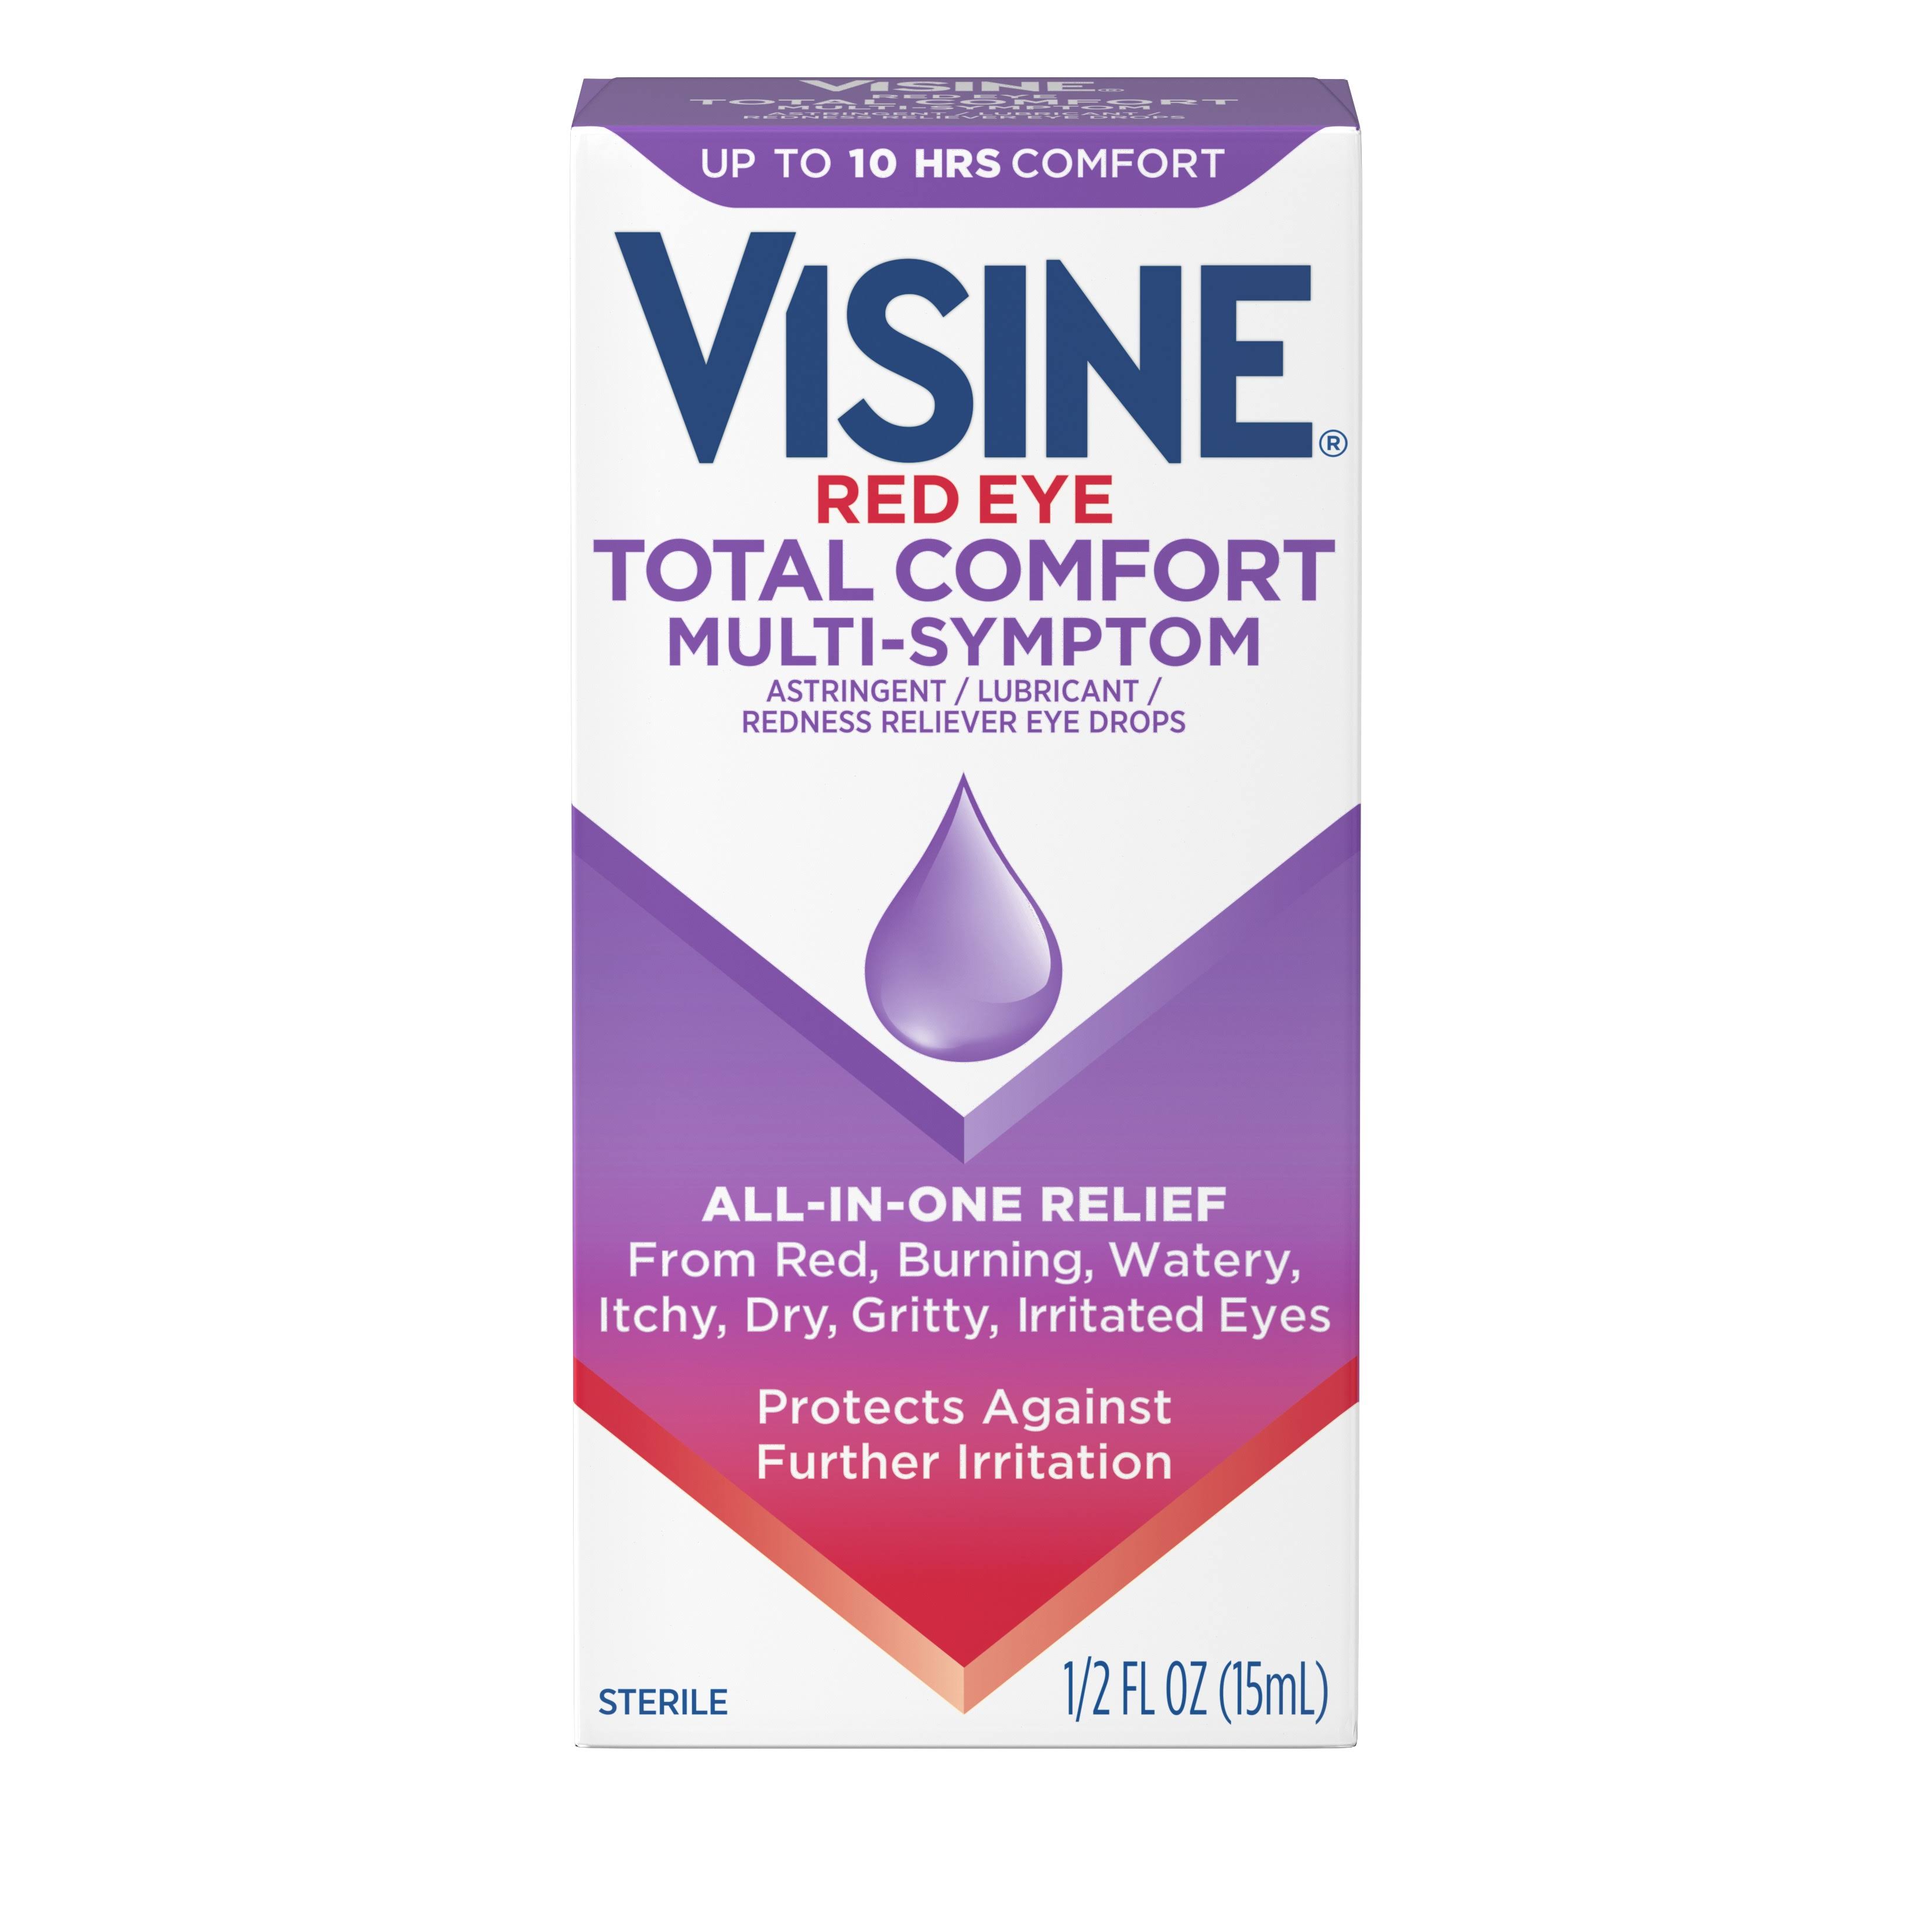 Visine Eye Drops, Red Eye, Total Comfort, Multi-Symptom, Sterile - 0.5 fl oz